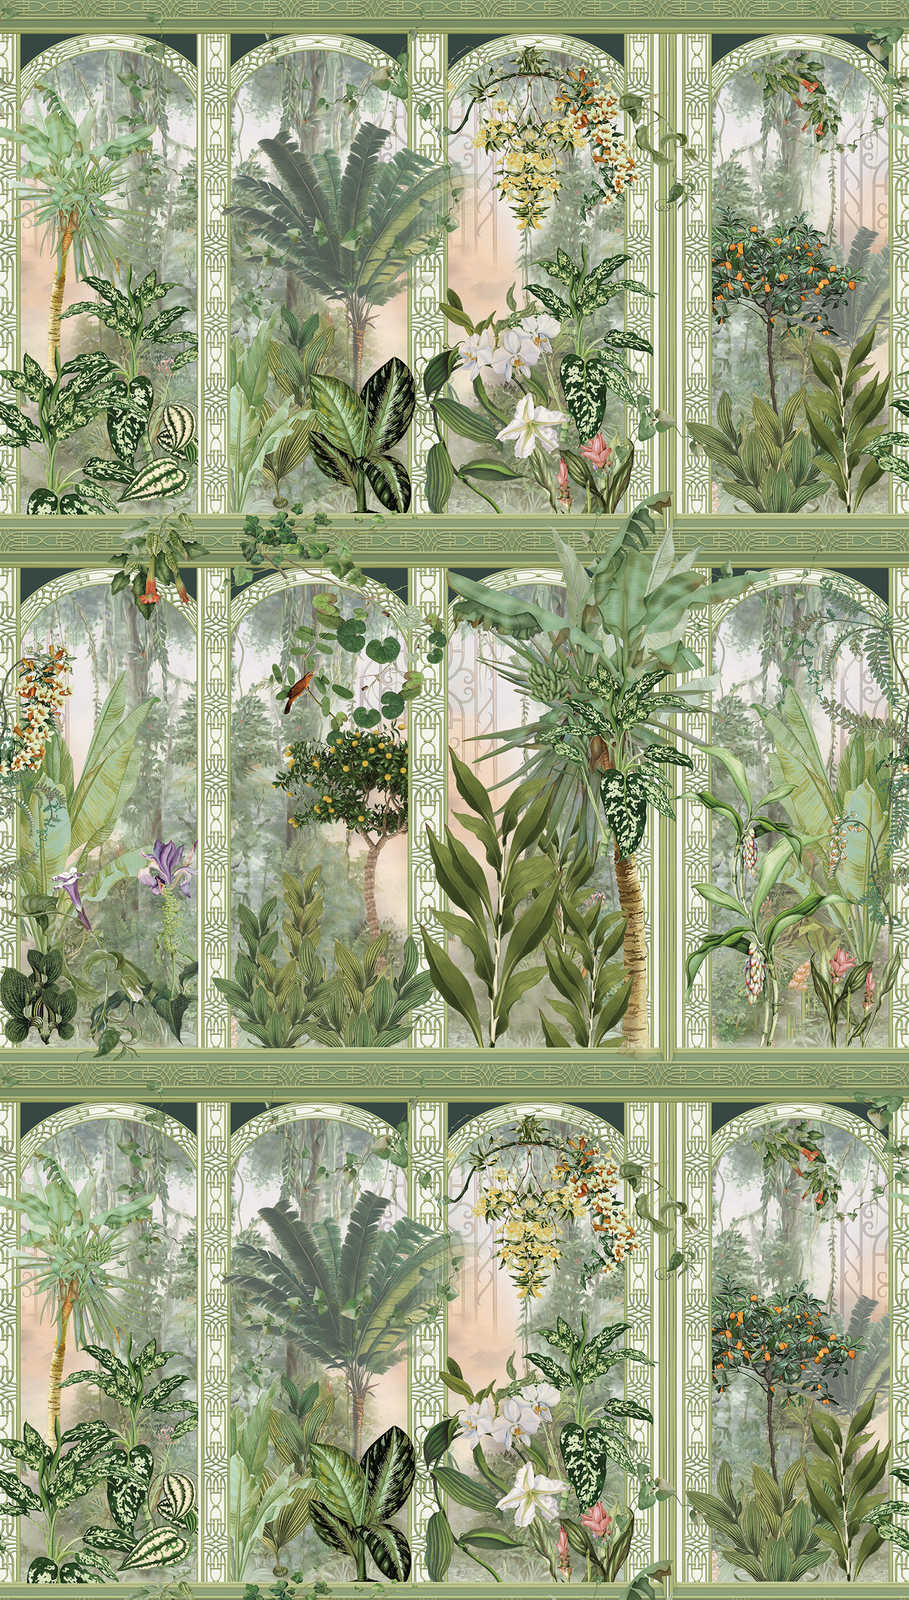             Papier peint motif jungle avec grandes feuilles et fleurs - vert, marron, blanc
        